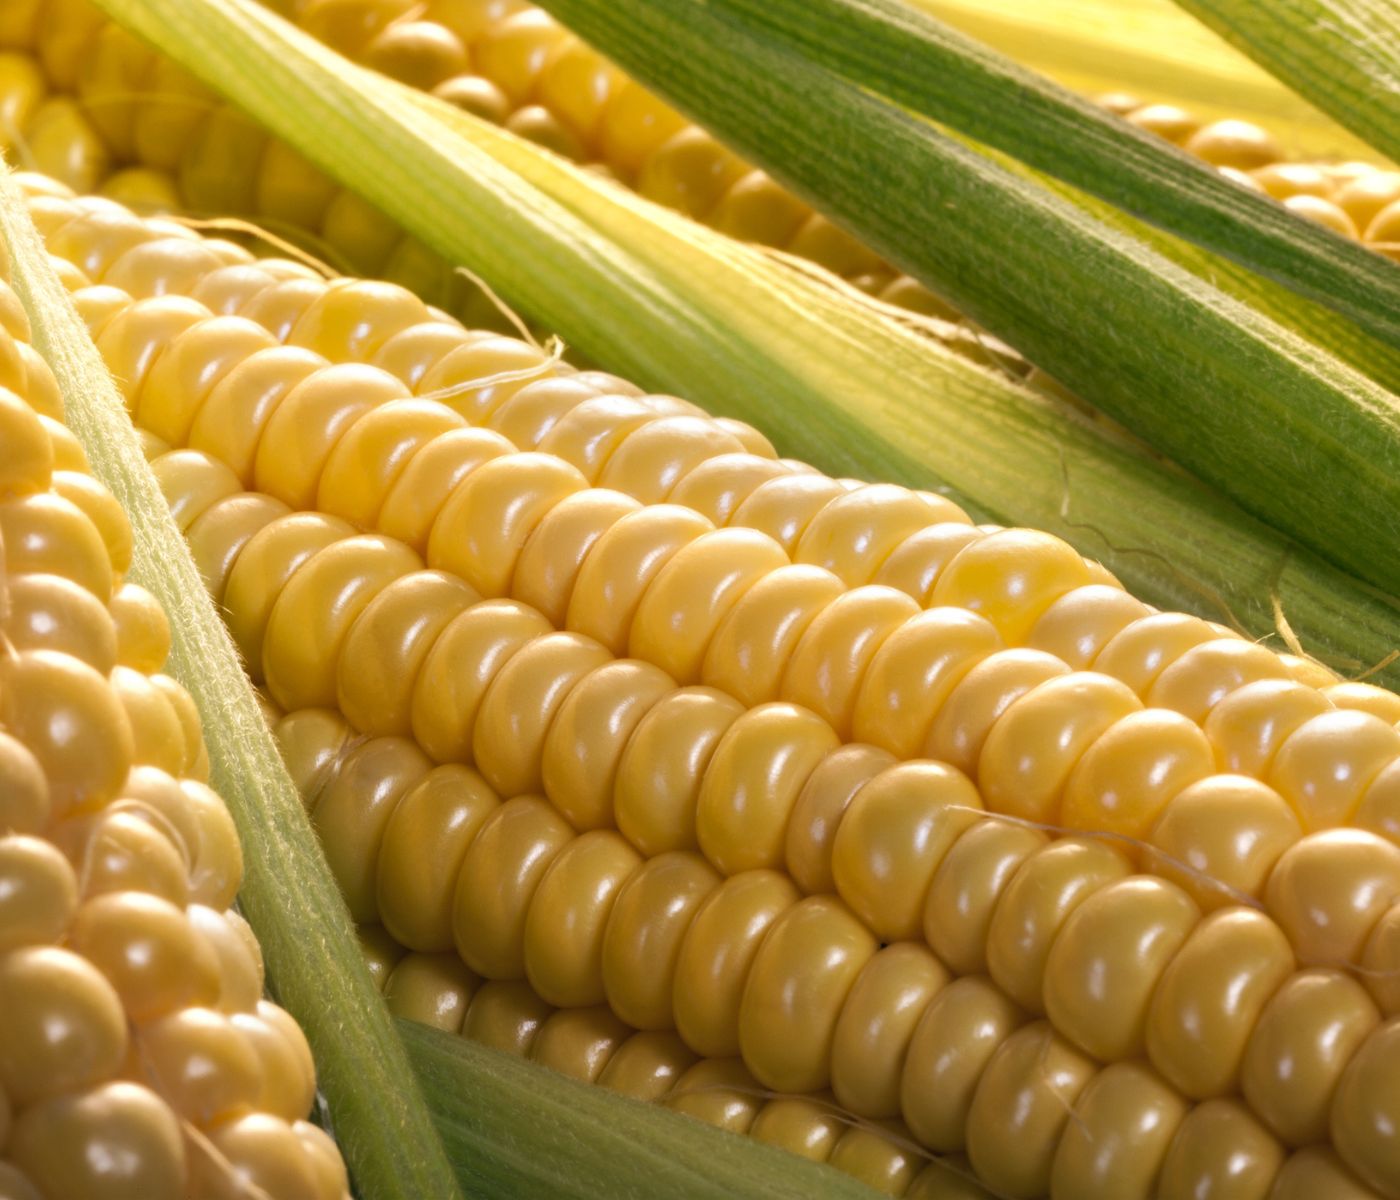 Avicultores mexicanos: Instan al gobierno a no restringir importación de maíz amarillo desde EEUU